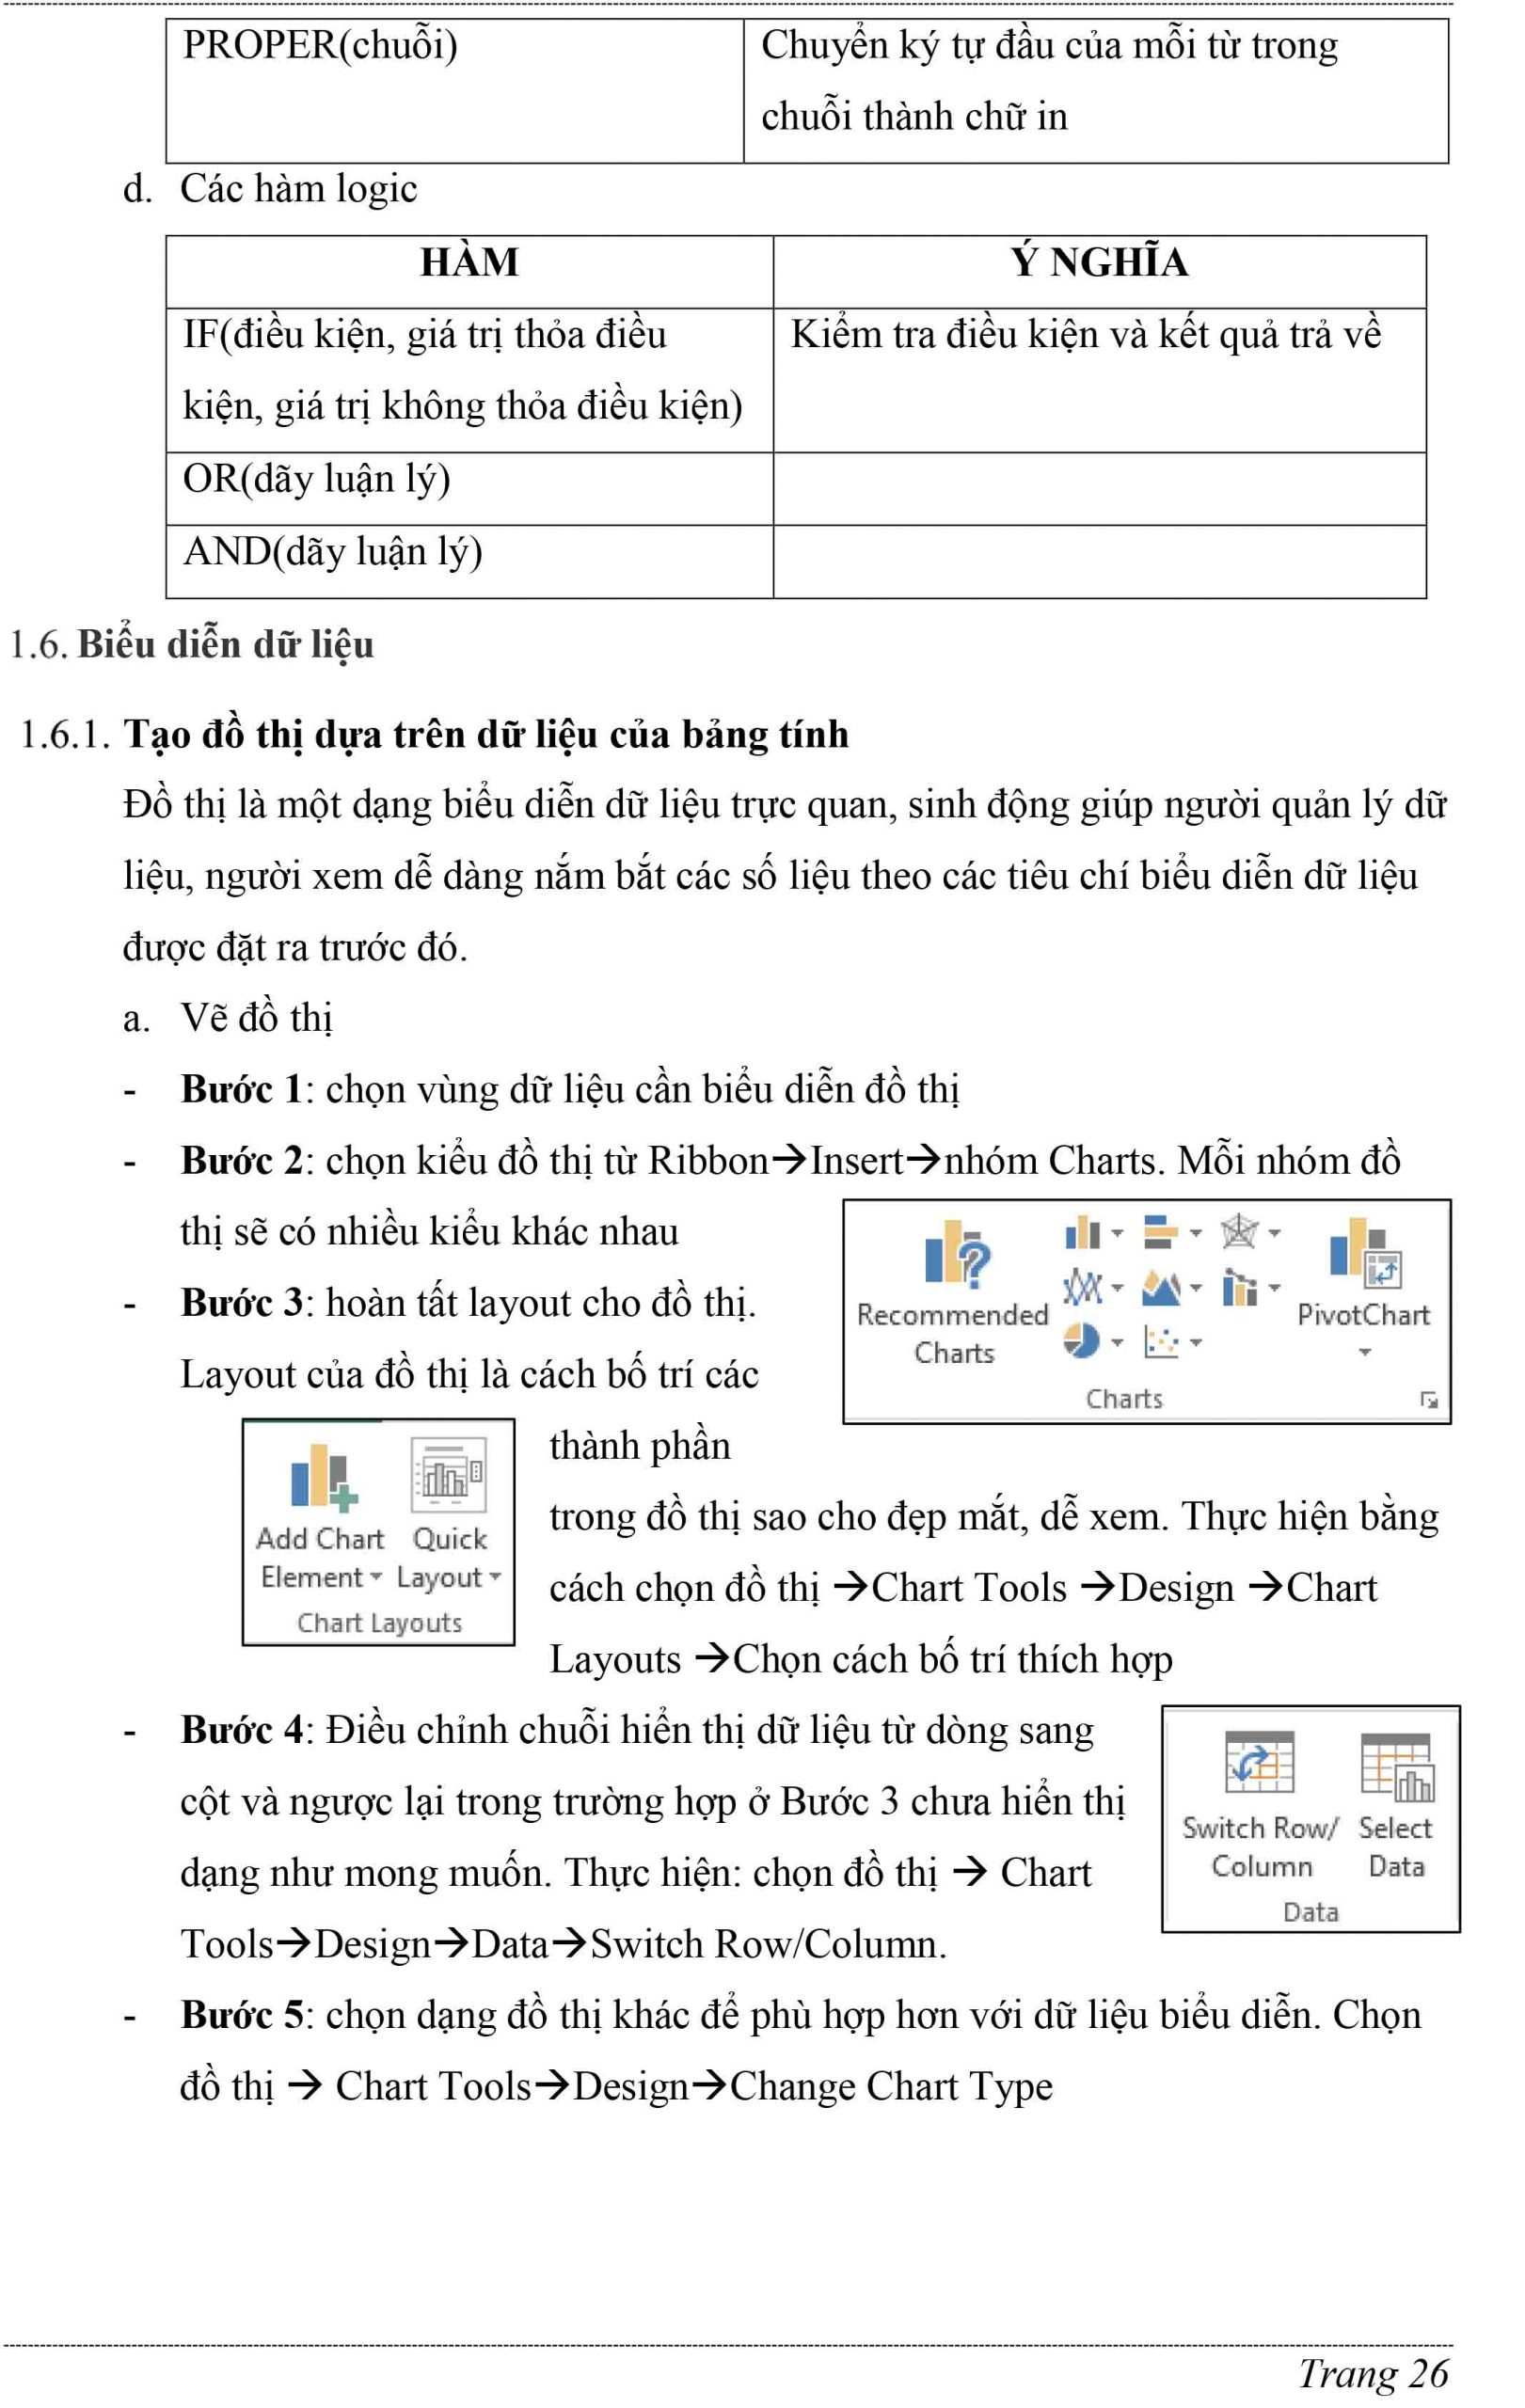 Bạn đang muốn trau dồi kỹ năng sử dụng Microsoft Excel? Giáo trình Tin học Văn phòng Microsoft Excel sẽ giúp bạn nắm vững các kỹ năng cơ bản và nâng cao của Excel. Từ việc tạo bảng tính đến xử lý dữ liệu và biểu đồ, bạn sẽ trở thành một chuyên gia trong việc sử dụng Excel. Bấm vào hình ảnh liên quan để học thêm.